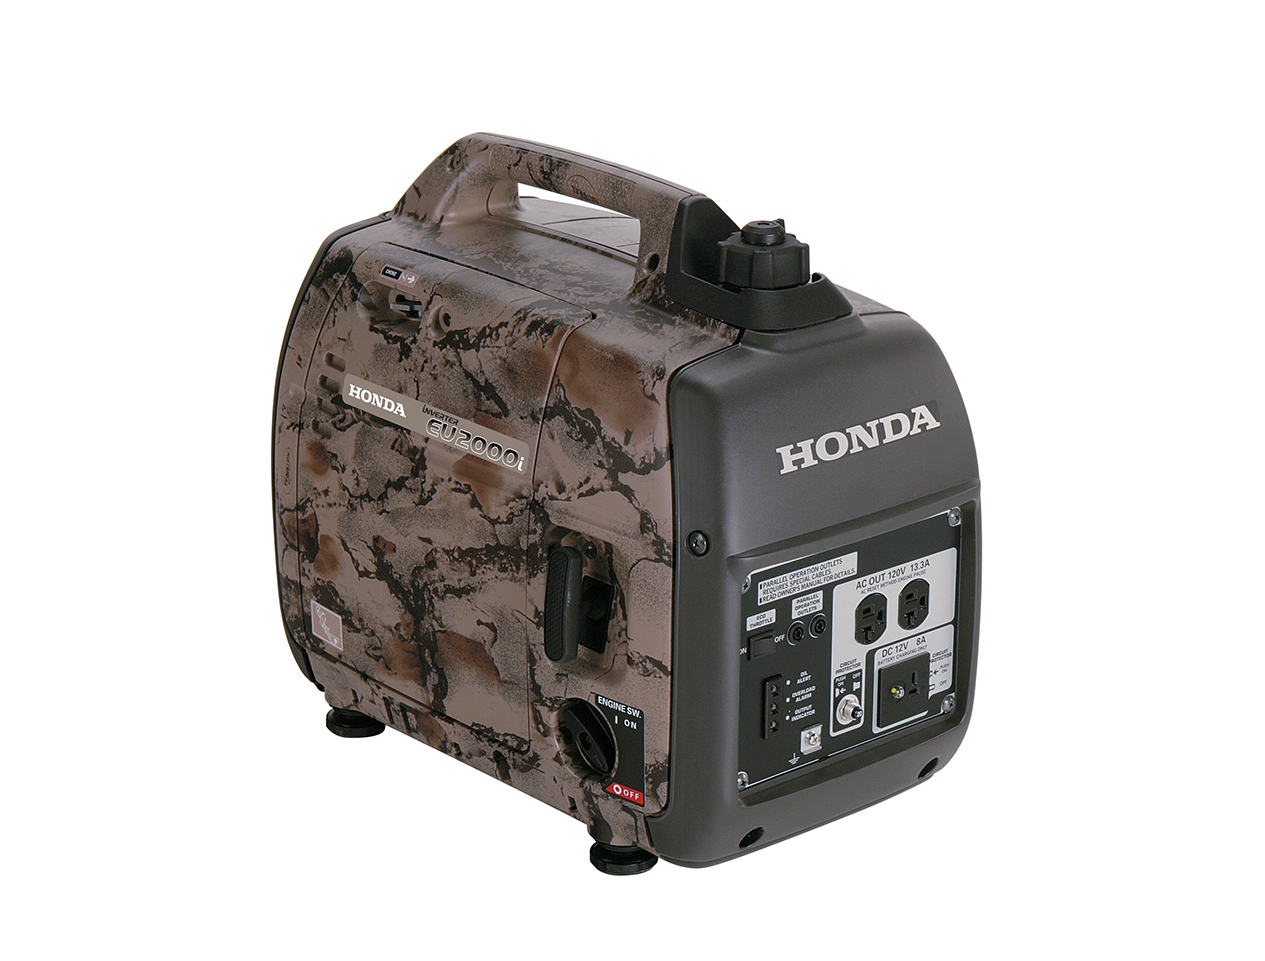 Honda generator registration #6